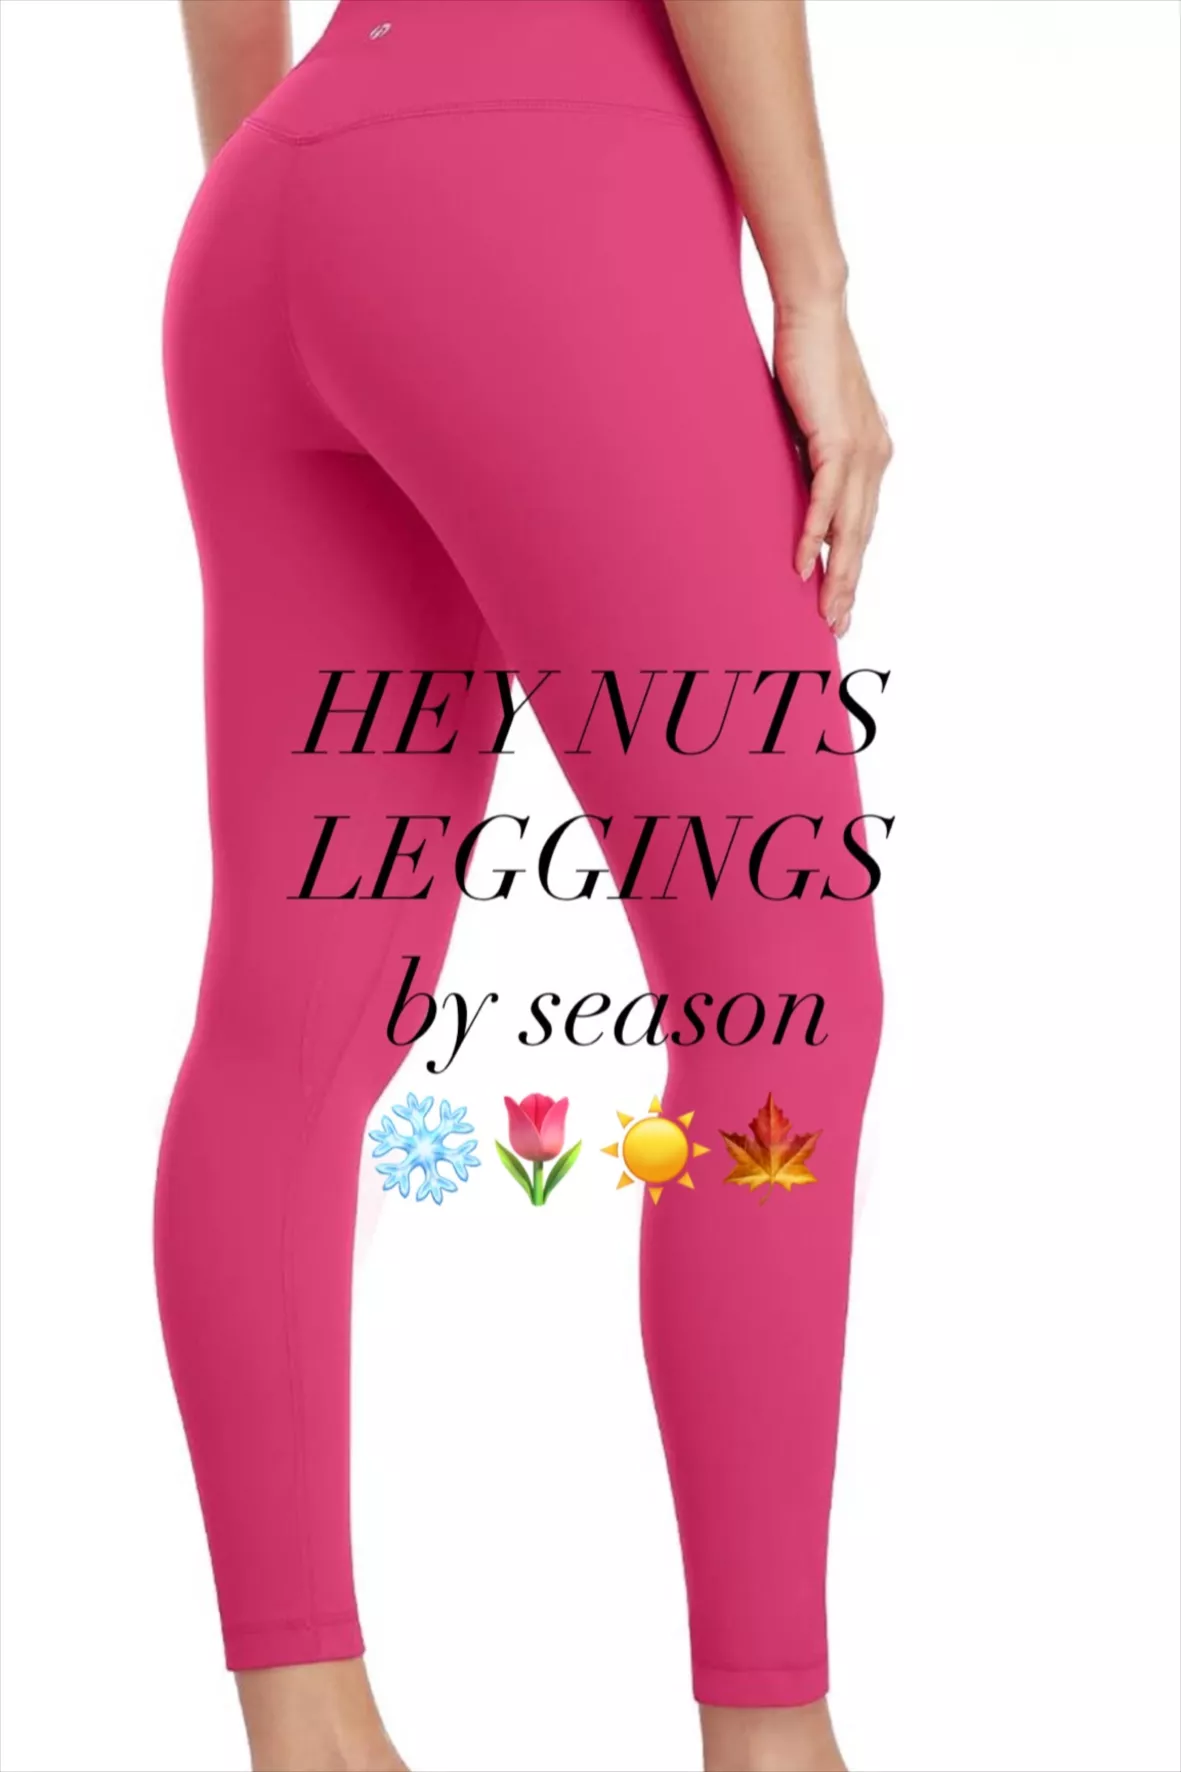  Hey Nuts Pink Leggings